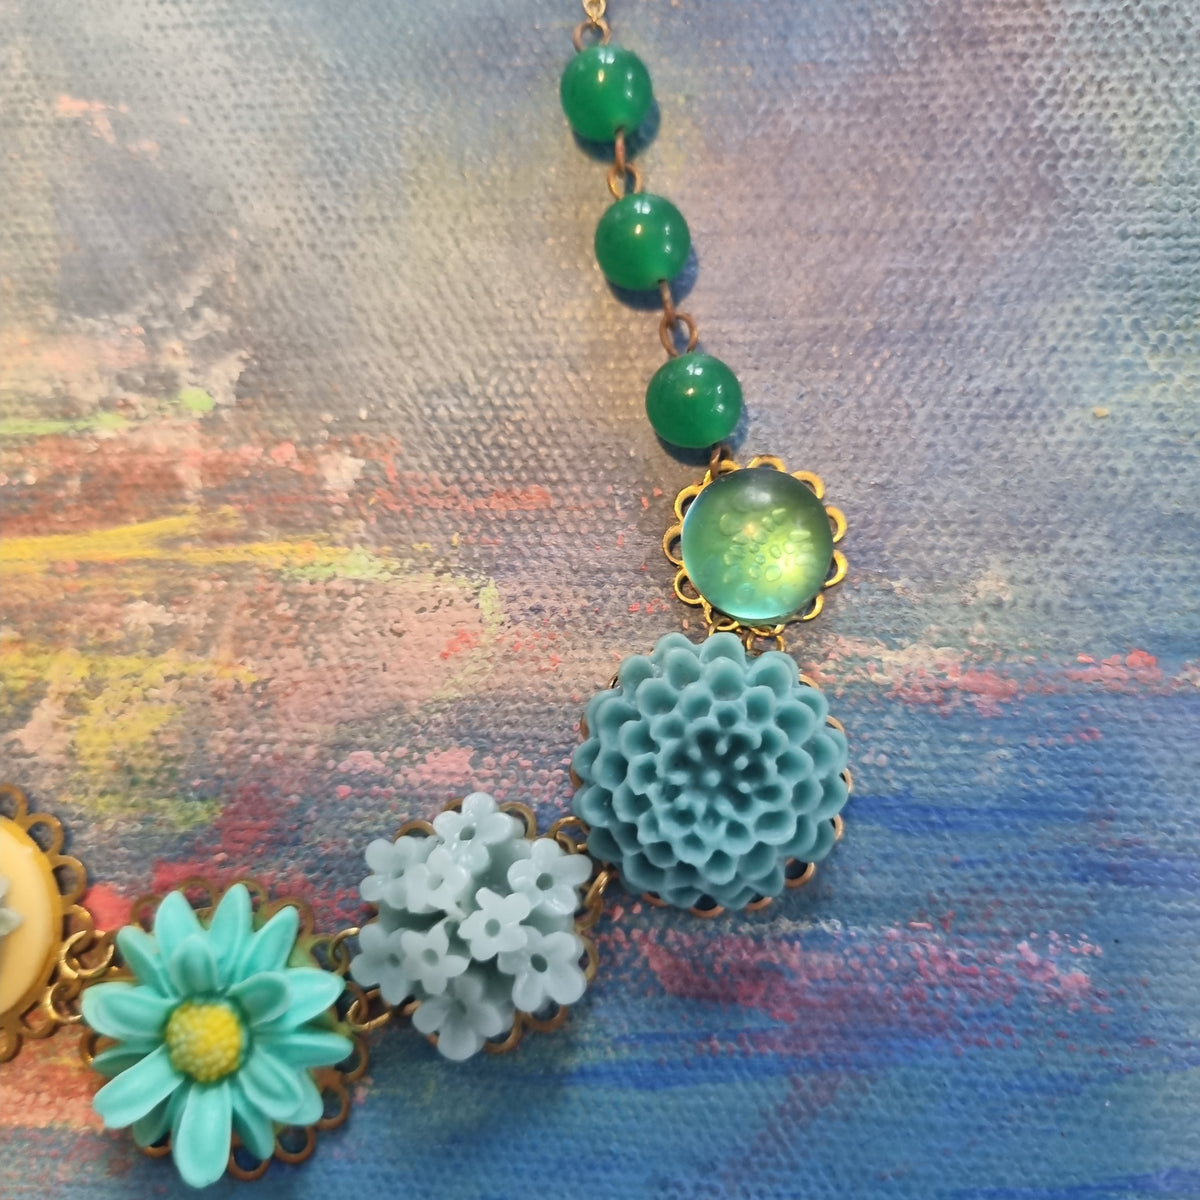 Halskæde i tyrkis og grønne farver - Hårpynt med blomster og perler til bryllup, konfirmation og fest